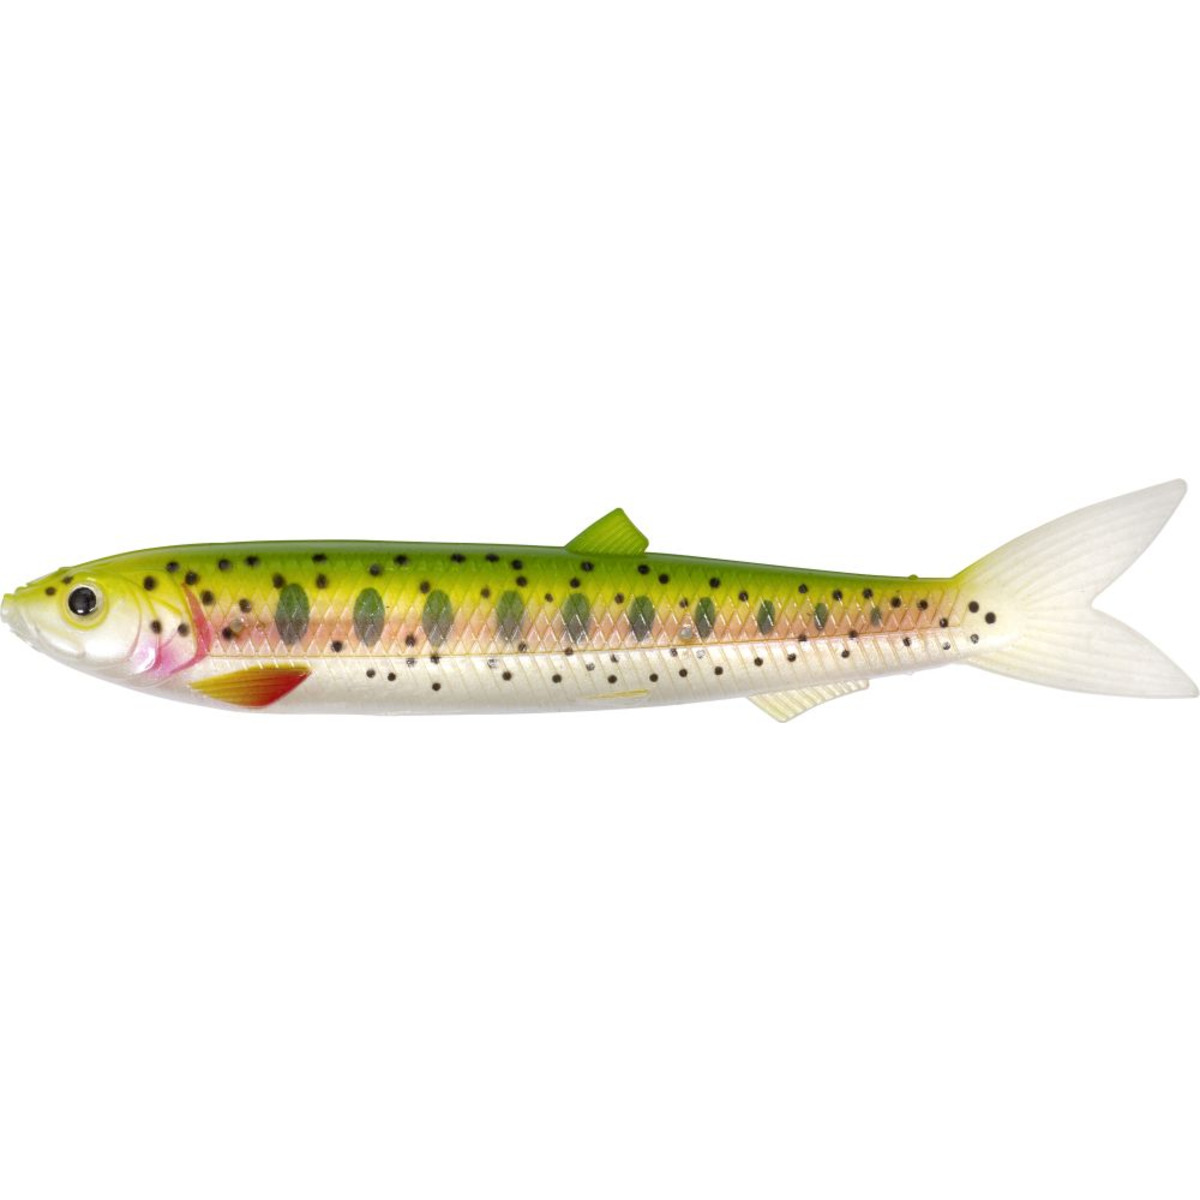 Rhino Soft-finny - rainbow trout